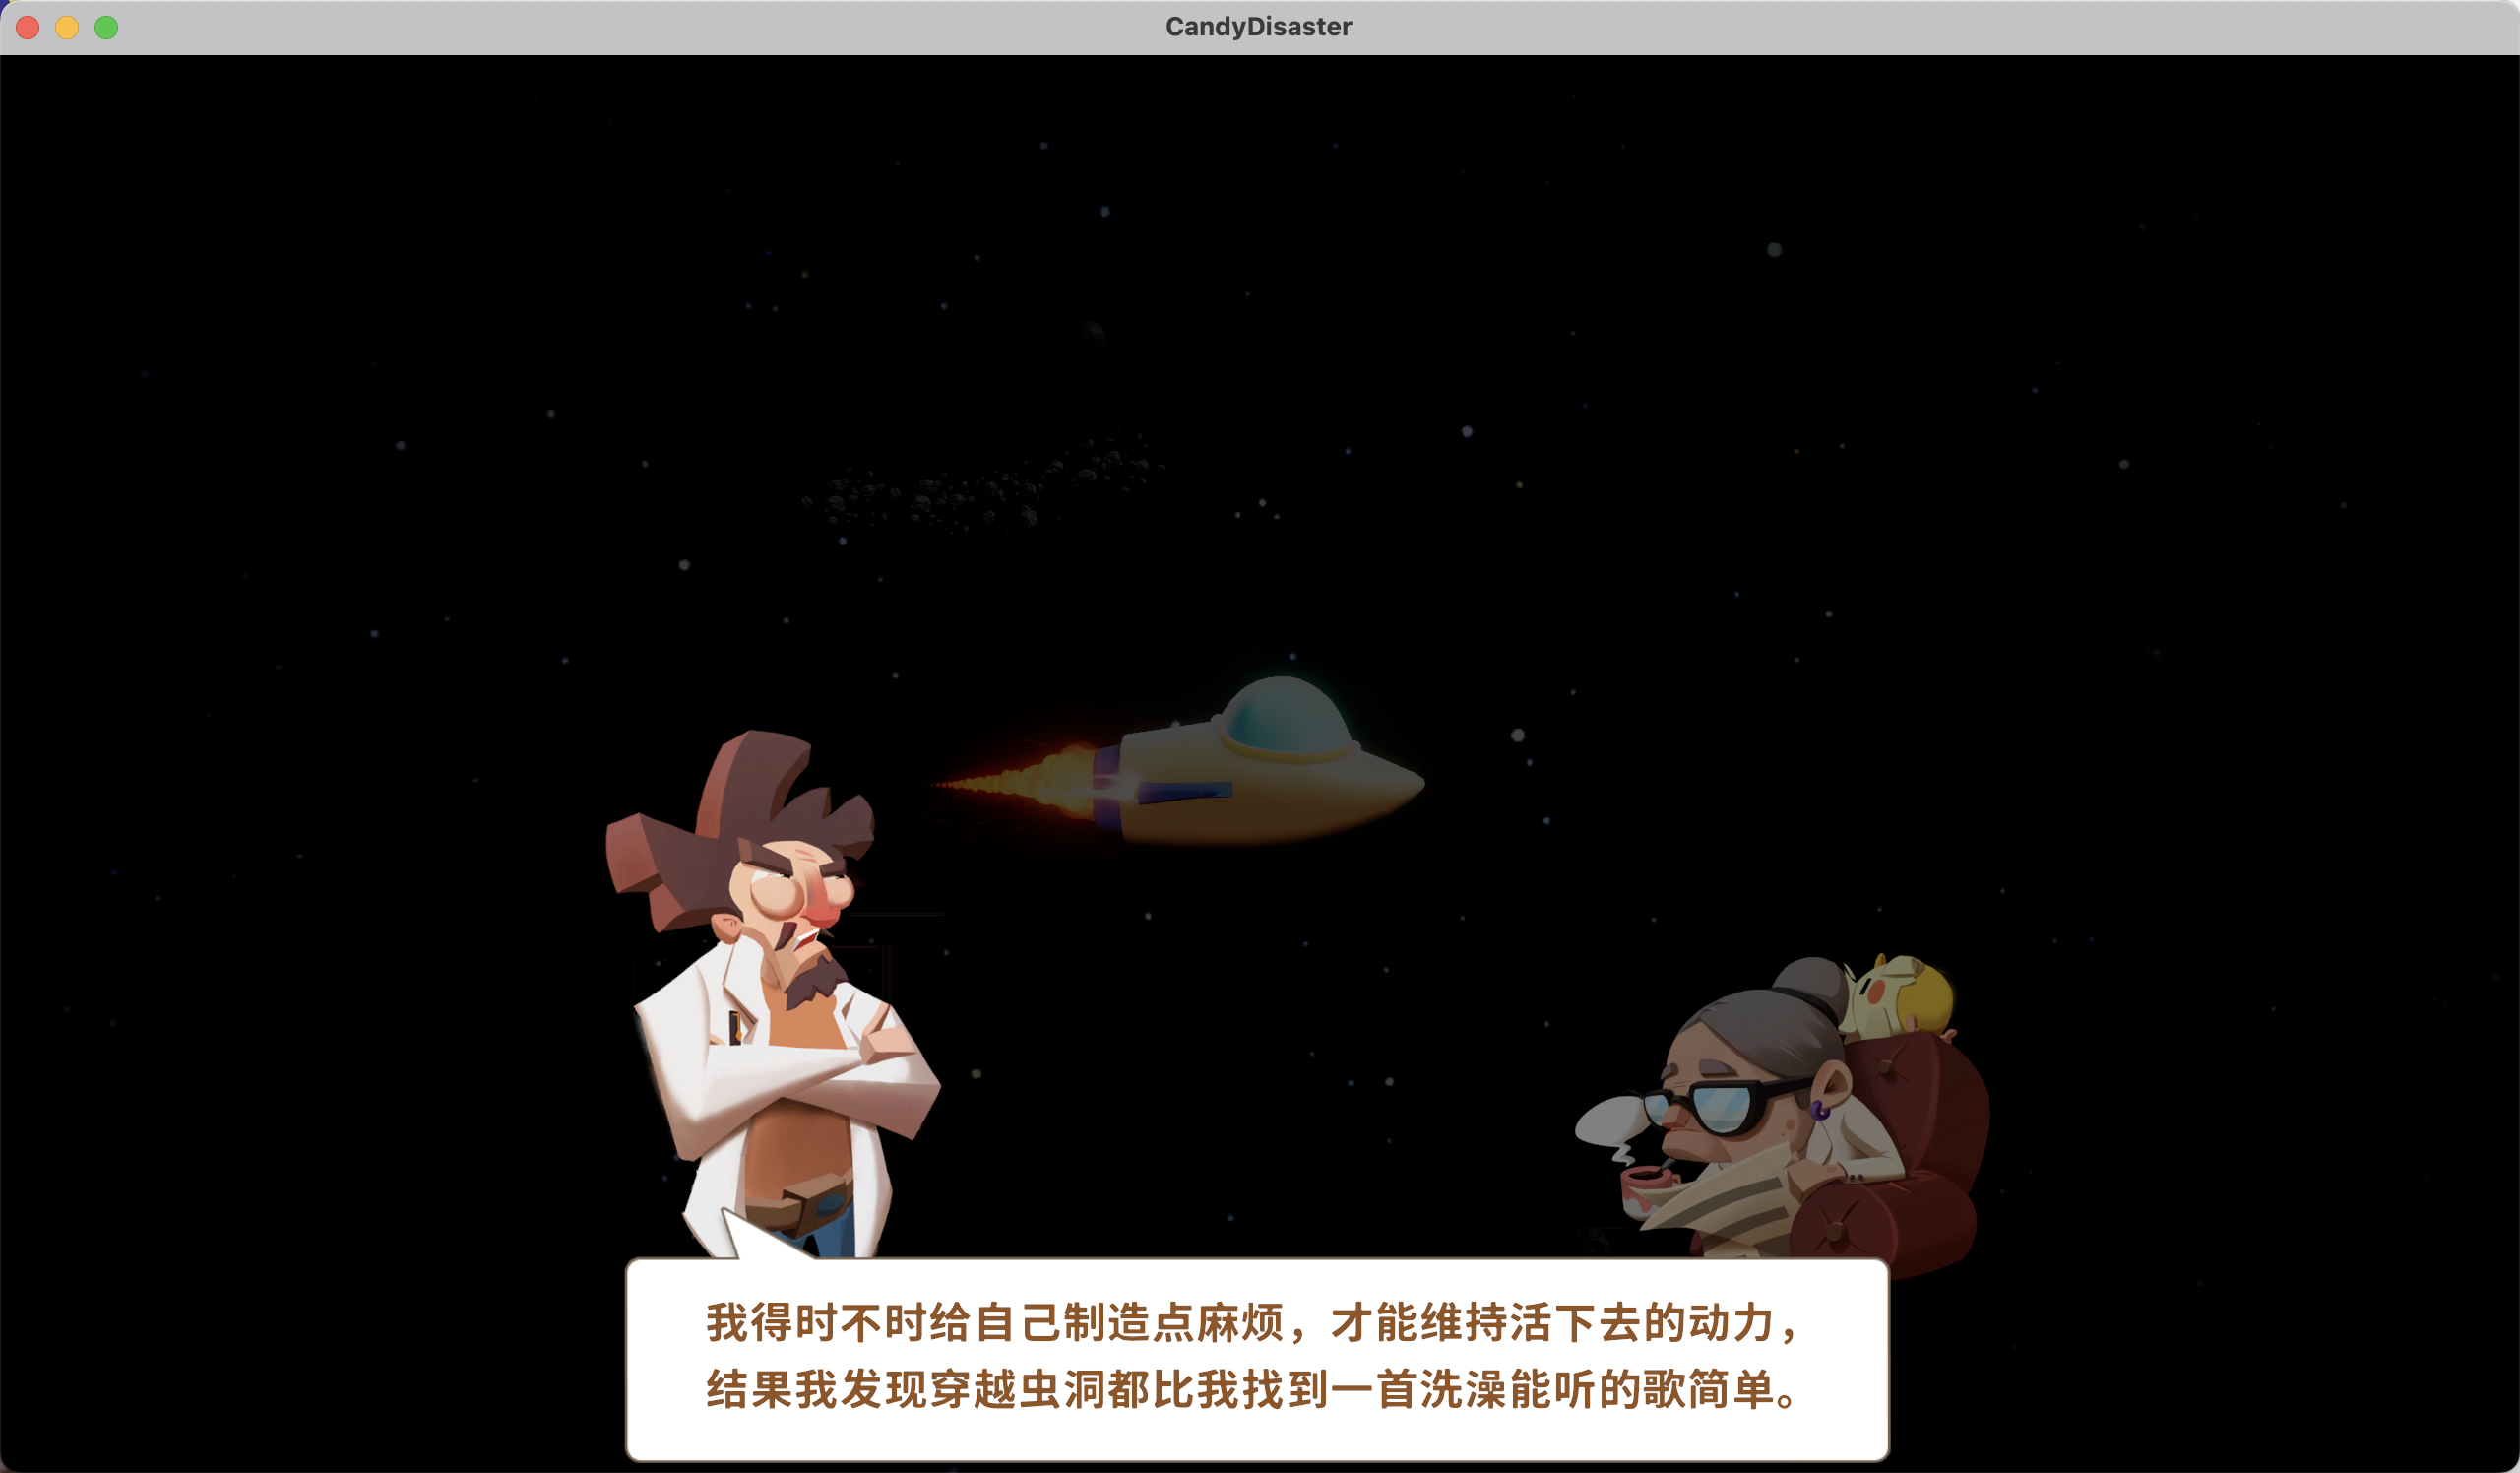 糖果灾难 for Mac v2.1.1 Candy Disaster 中文原生版 苹果电脑